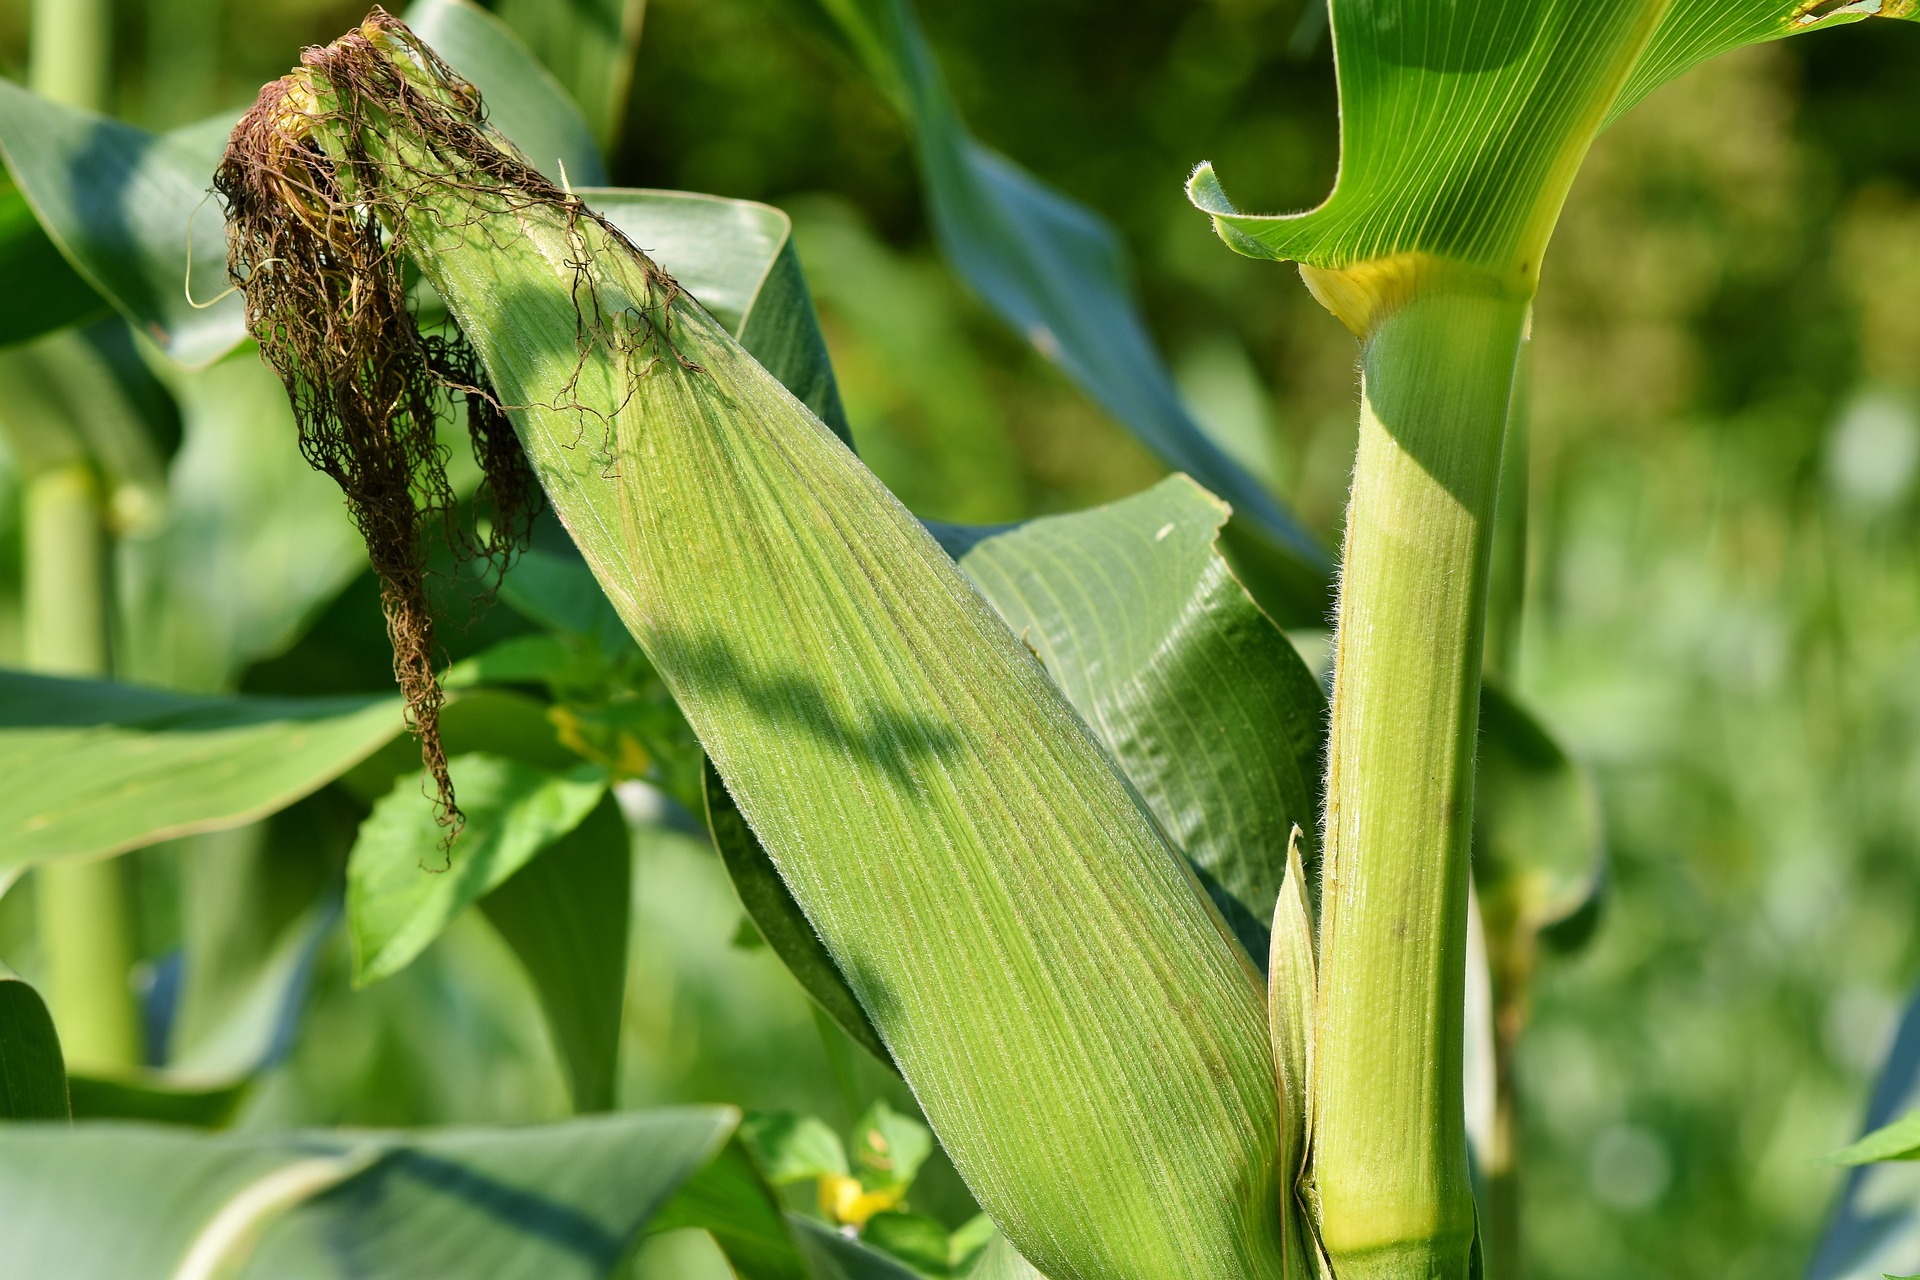 Napokon belül megkezdődhet a kukorica betakarítása